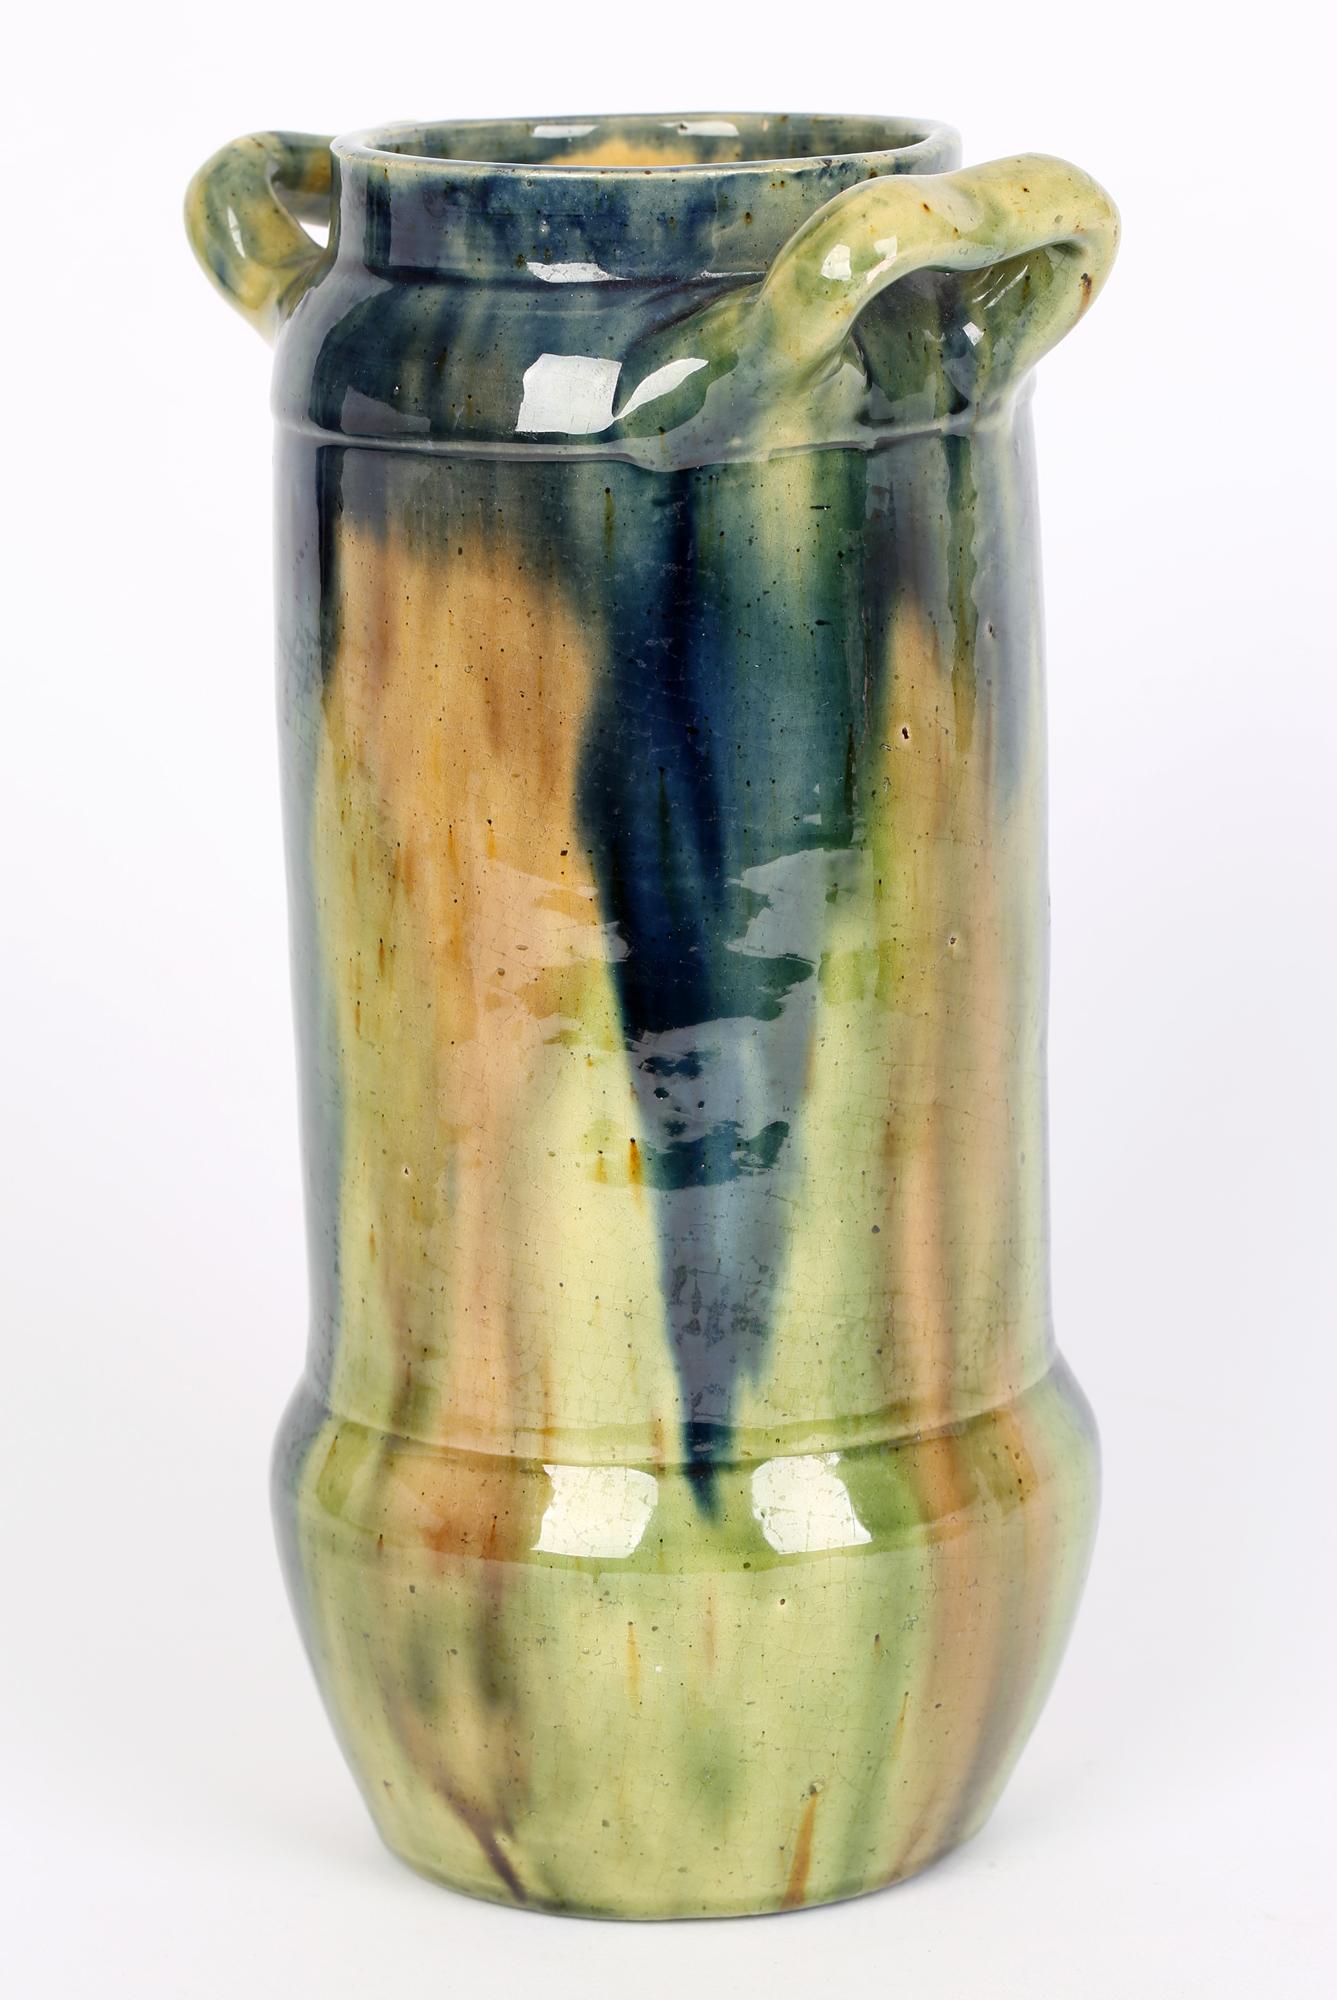 Eine stilvolle belgische Jugendstilvase mit zwei Henkeln aus Kunsttöpferware mit Streakglasur aus der Zeit um 1900. Die Vase aus Steingut hat eine hohe zylindrische Form mit einem abgerundeten, bowlenförmigen Sockel und einem flachen, glasierten Fuß